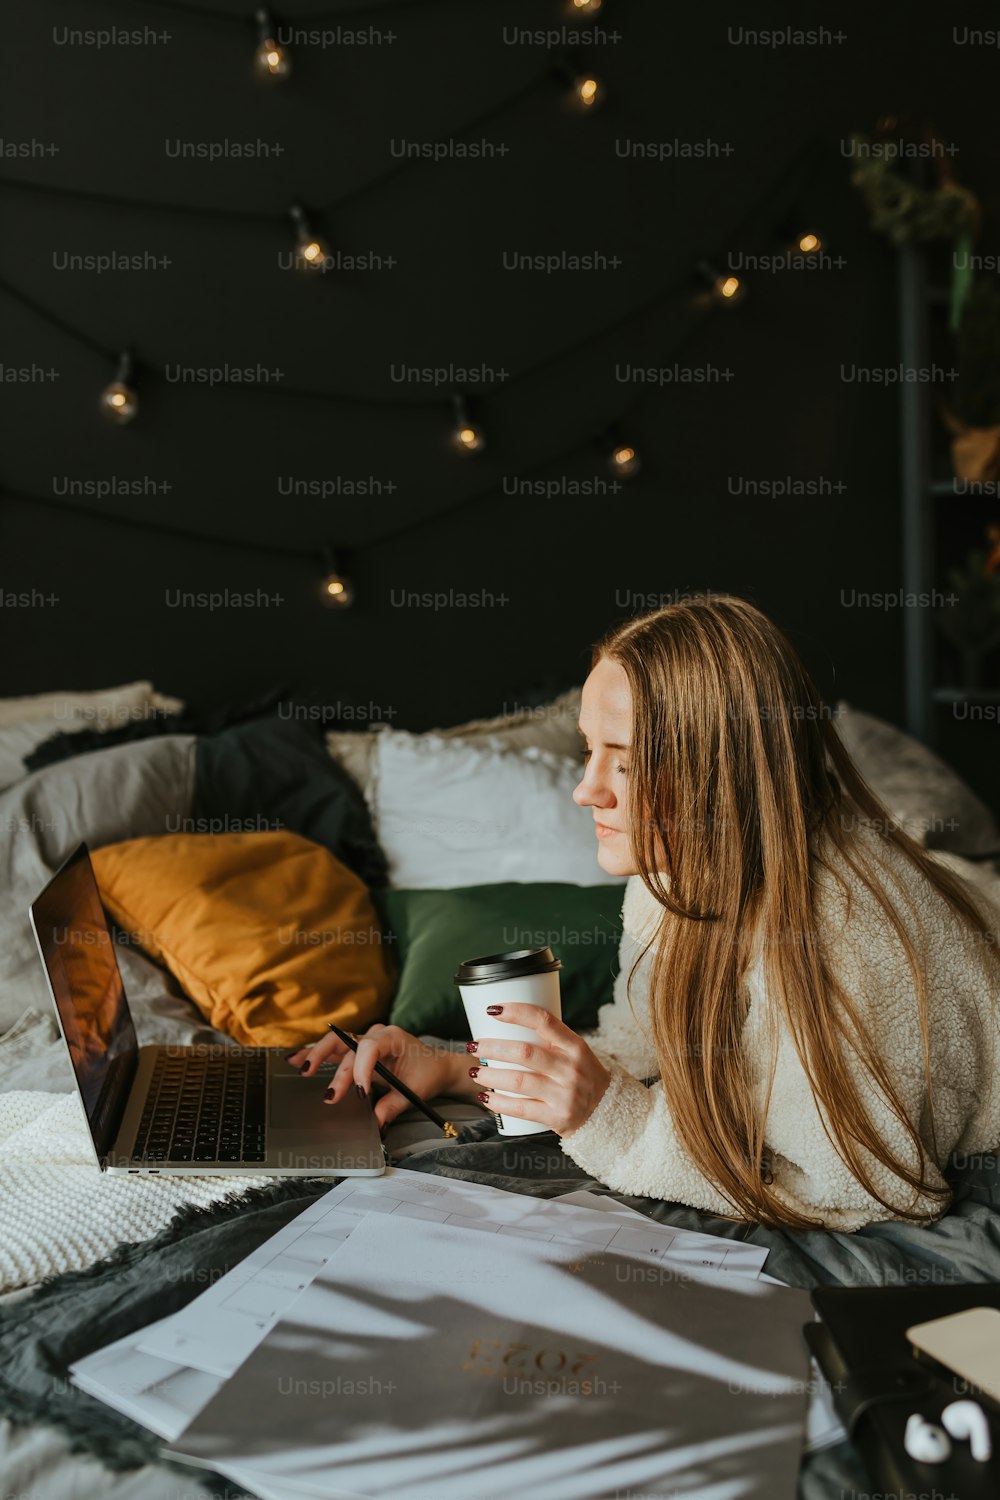 Una mujer sentada en una cama sosteniendo una taza de café